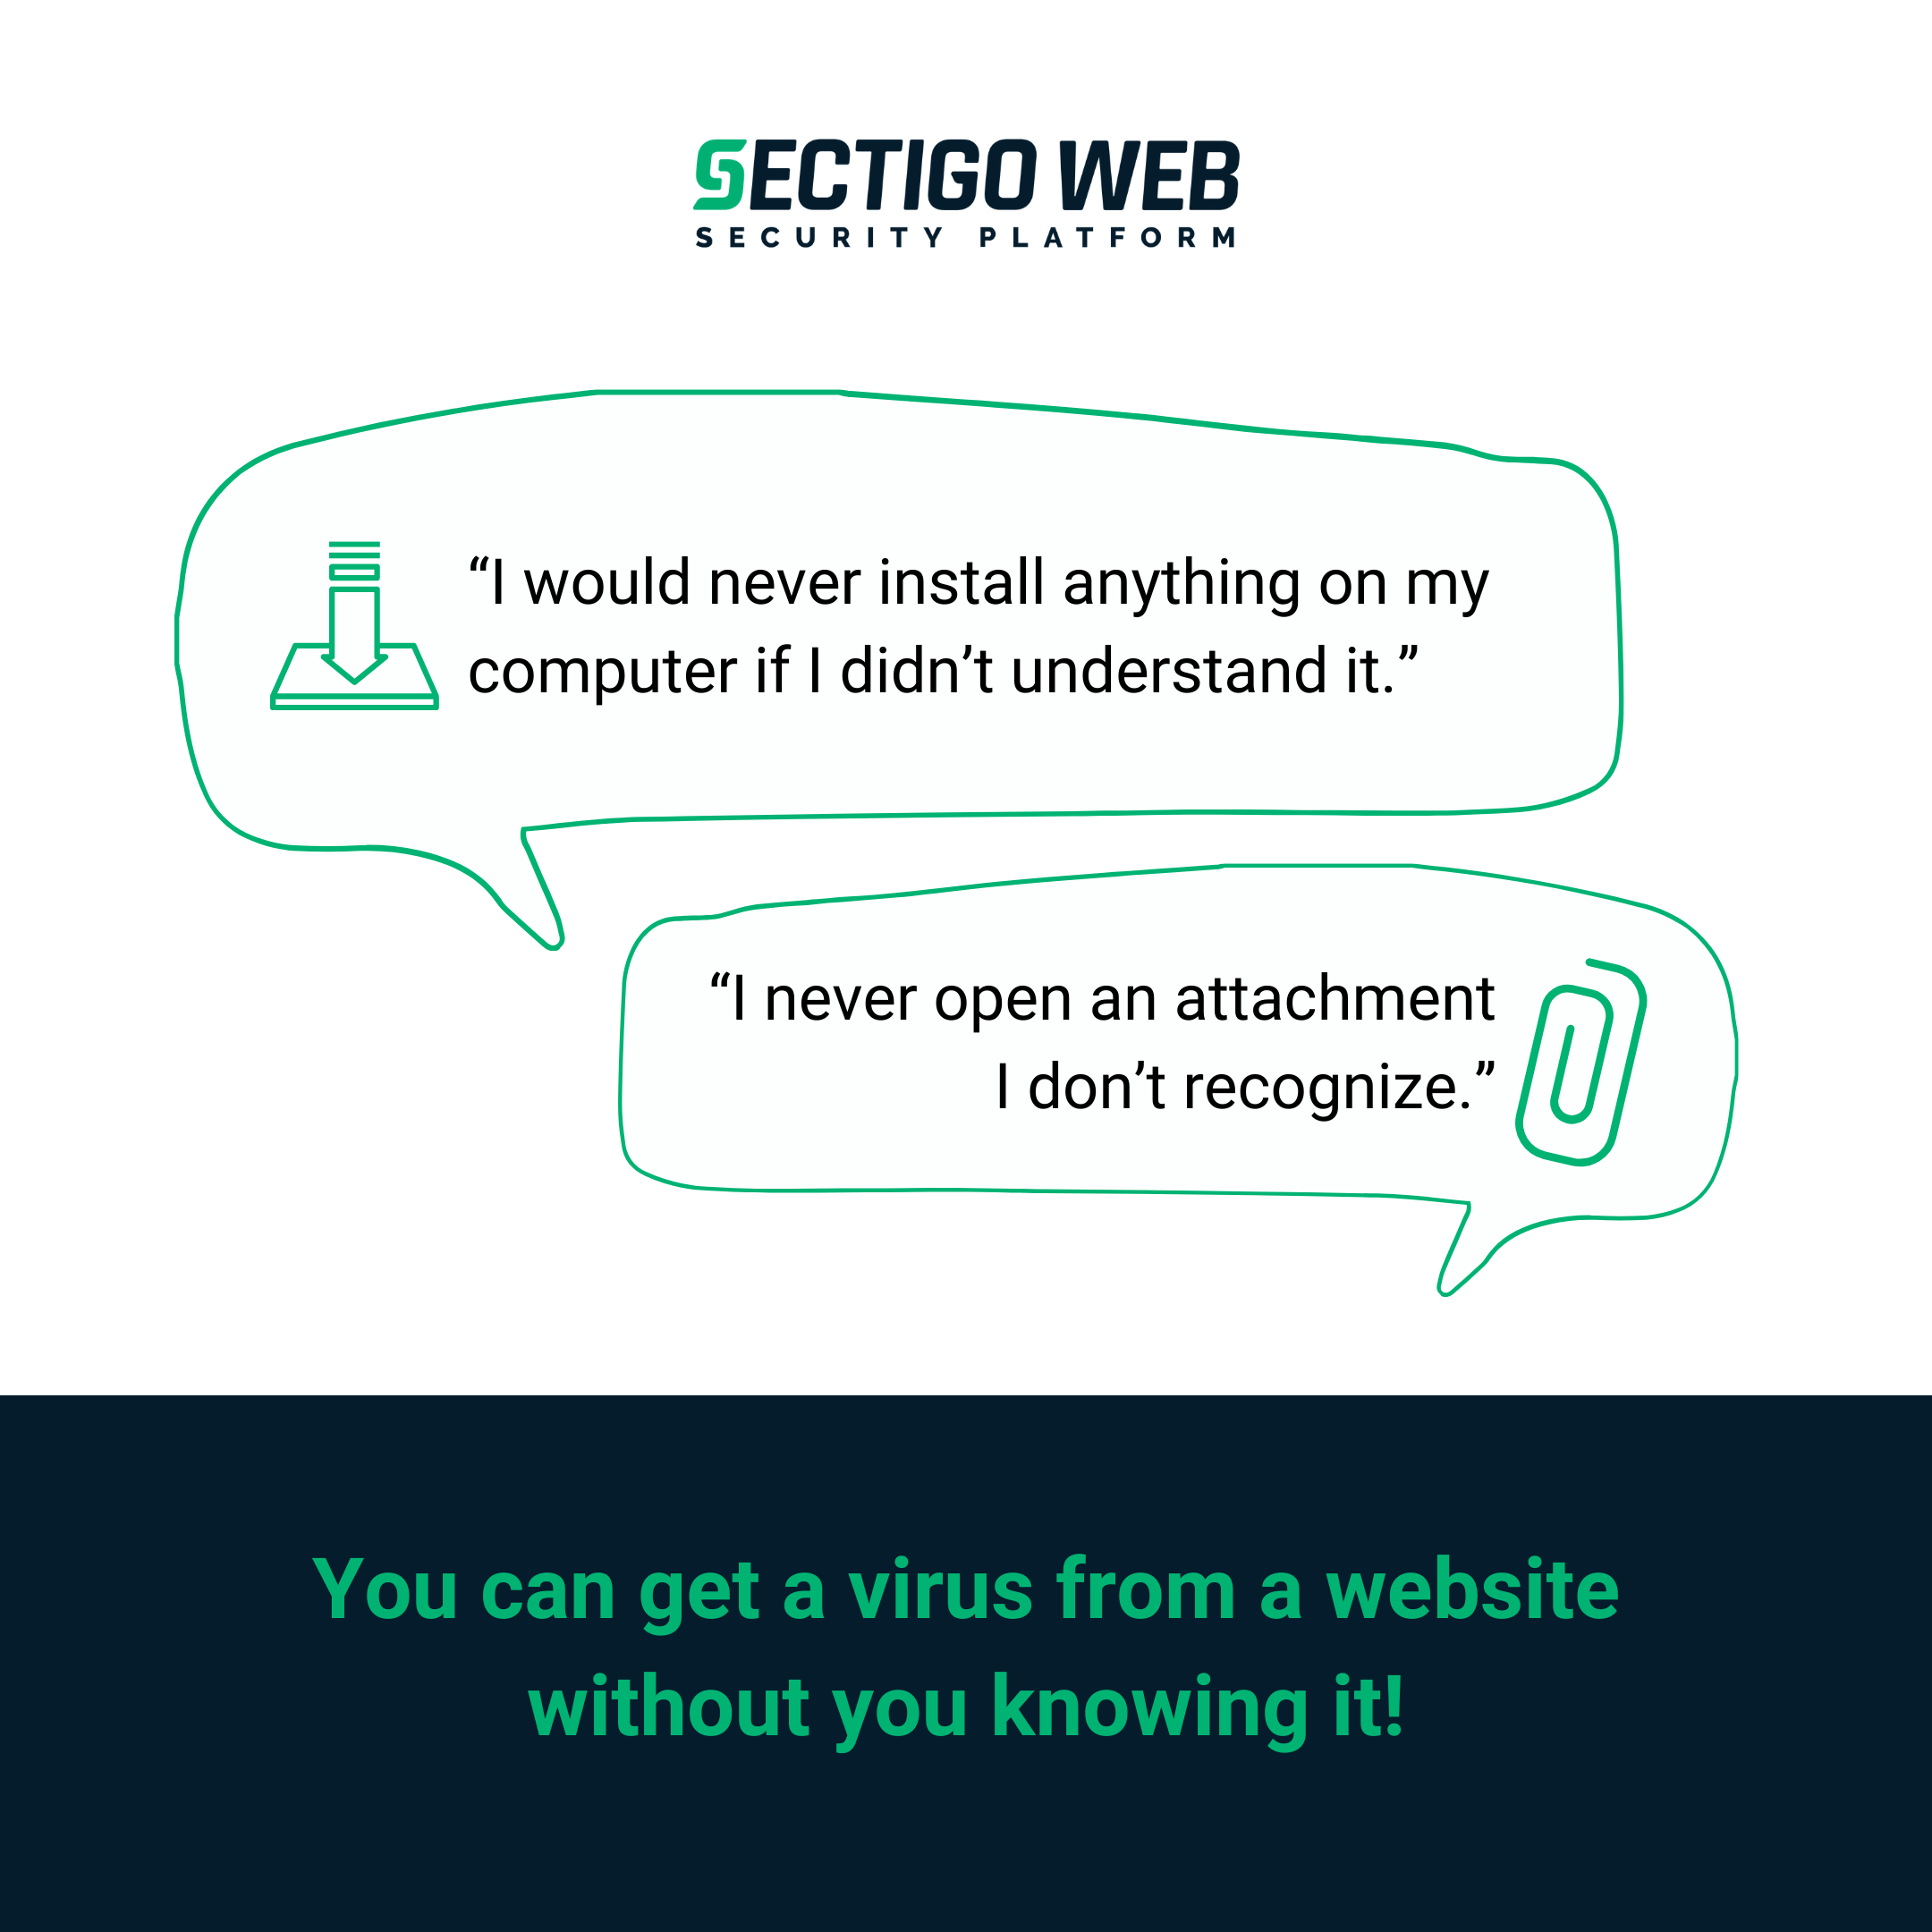 Puoi ottenere virus da siti Web sicuri?